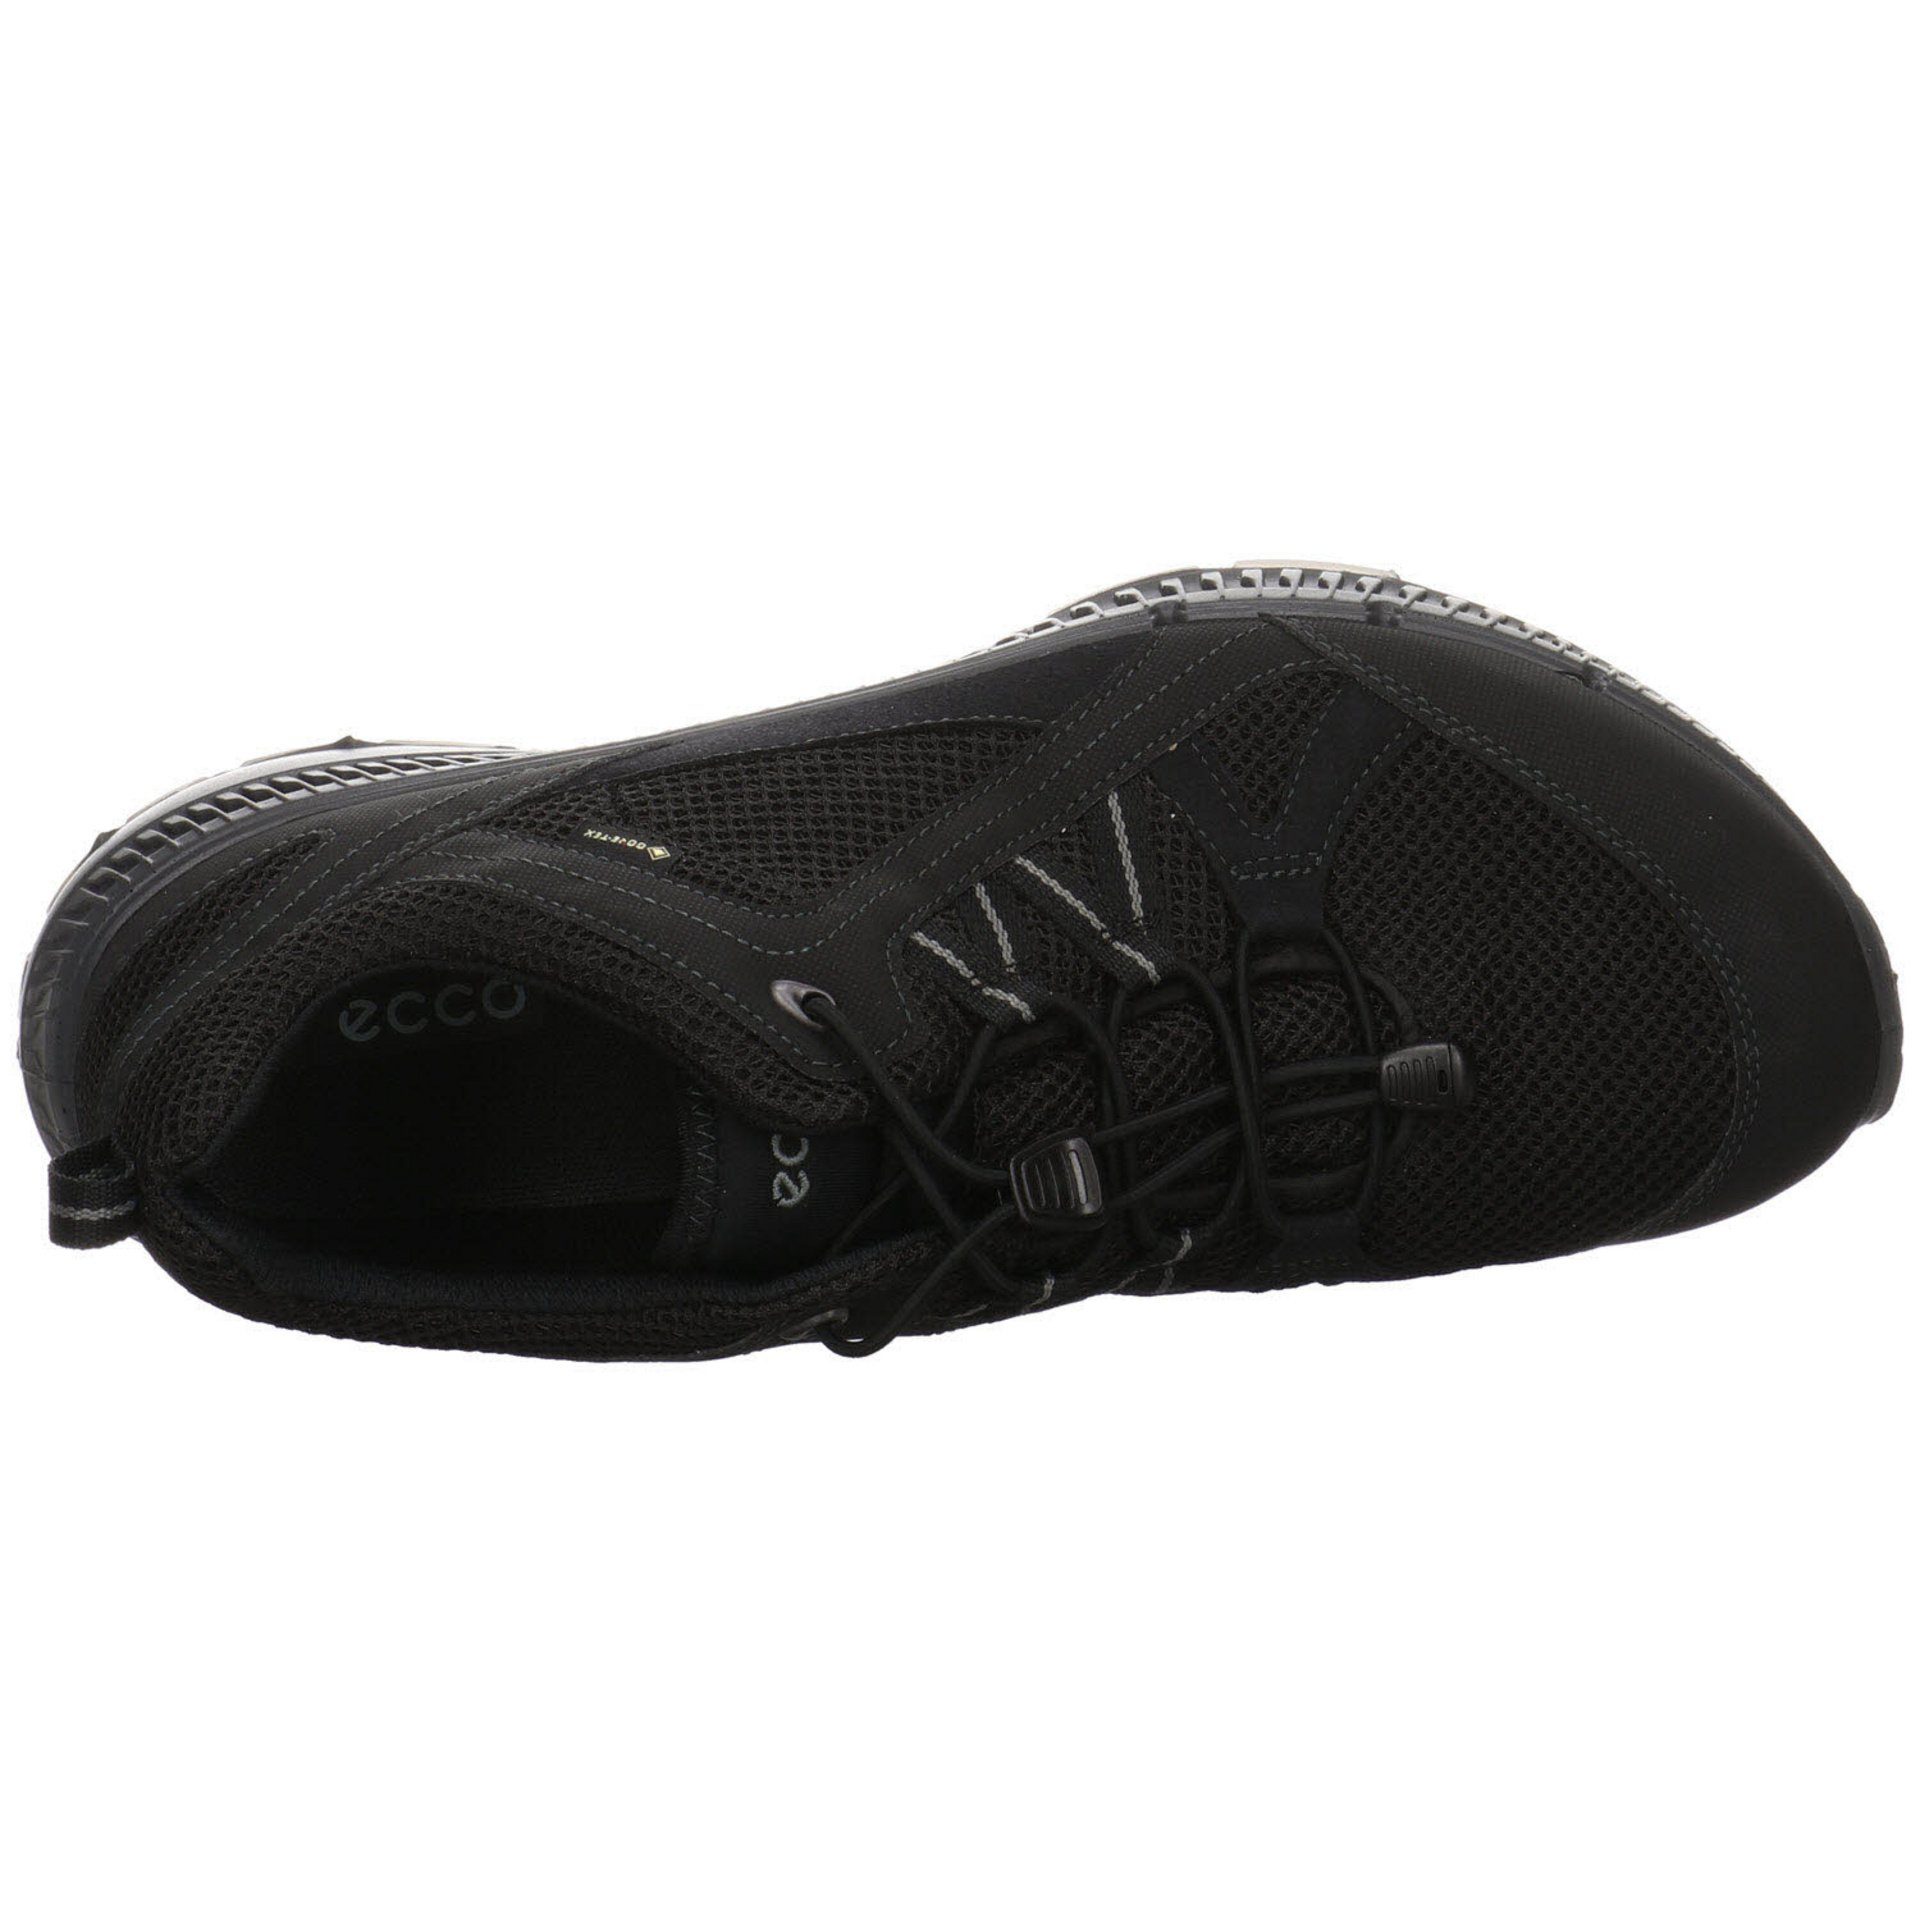 Herren Outdoorschuh Schuhe Synthetikkombination GTX Ecco Terracruise Outdoor dunkel Outdoorschuh schwarz